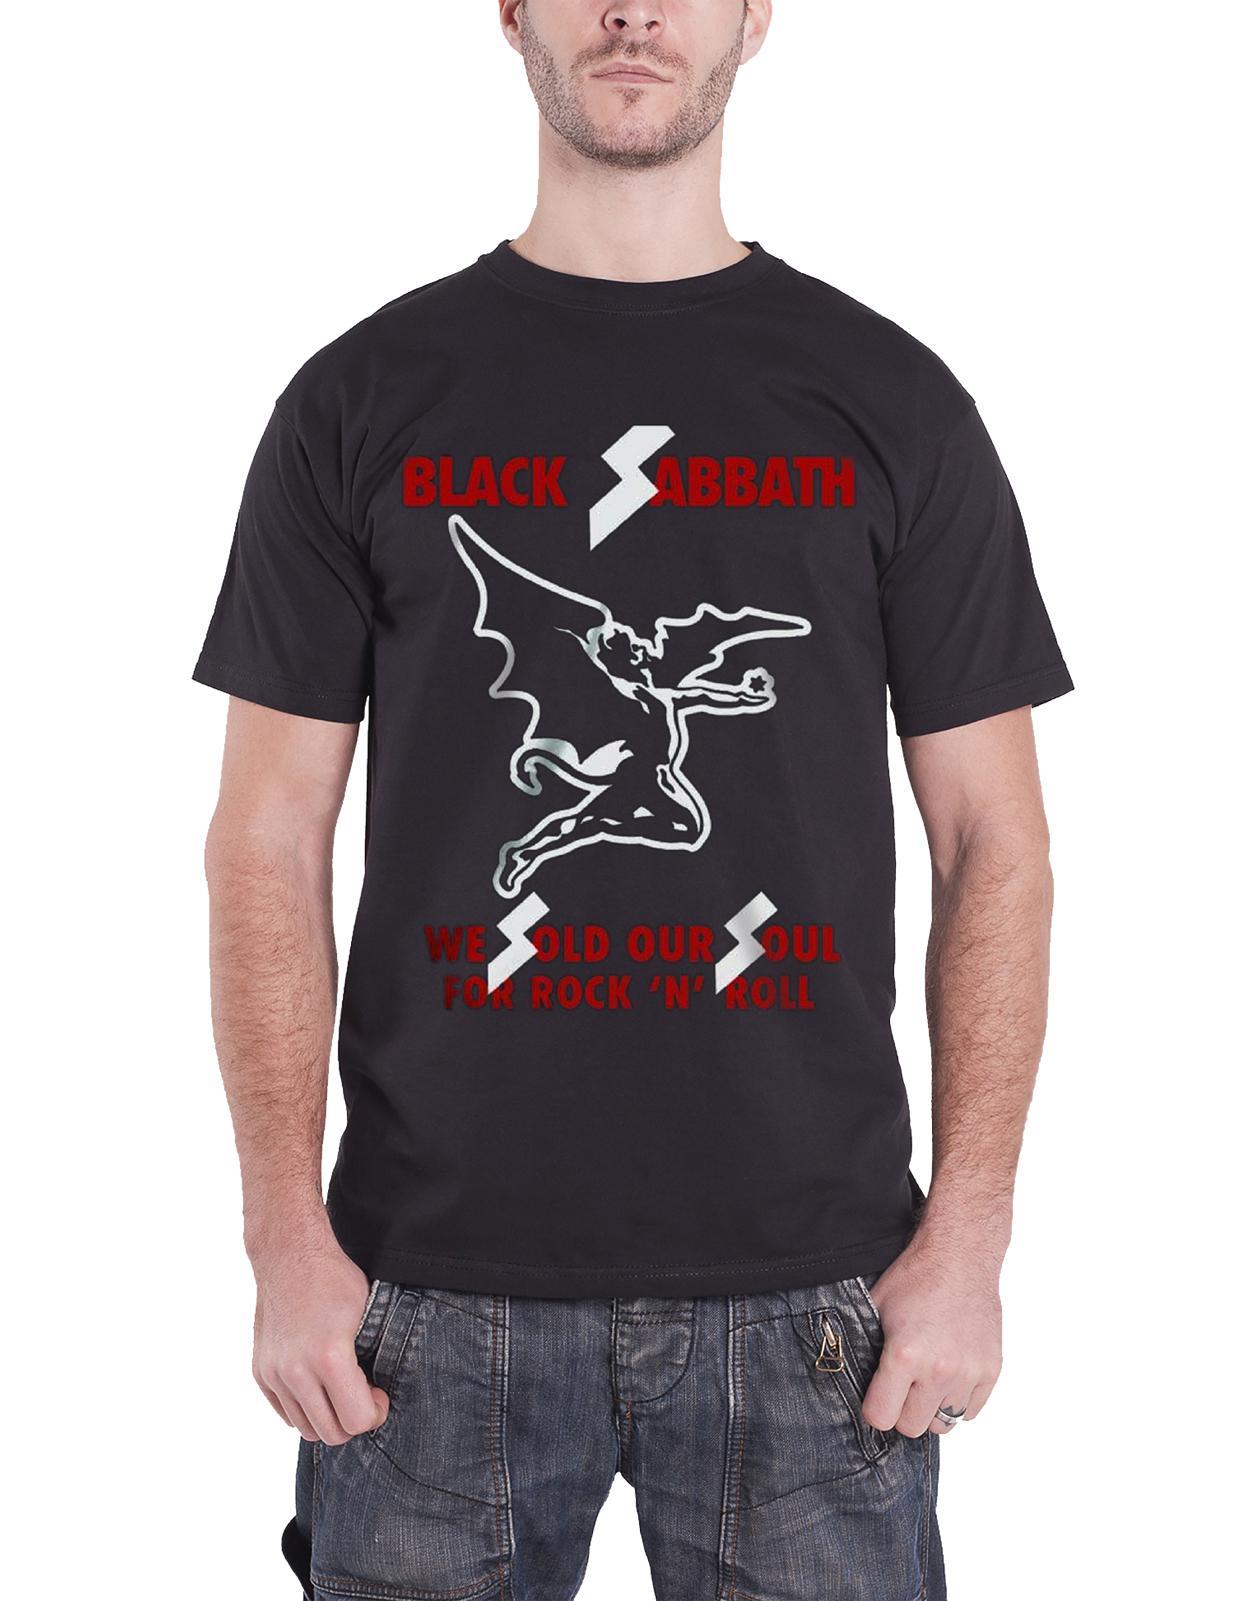 Black Sabbath T Shirt Sold Our Soul Demon Band Logo Official Unisex New Black